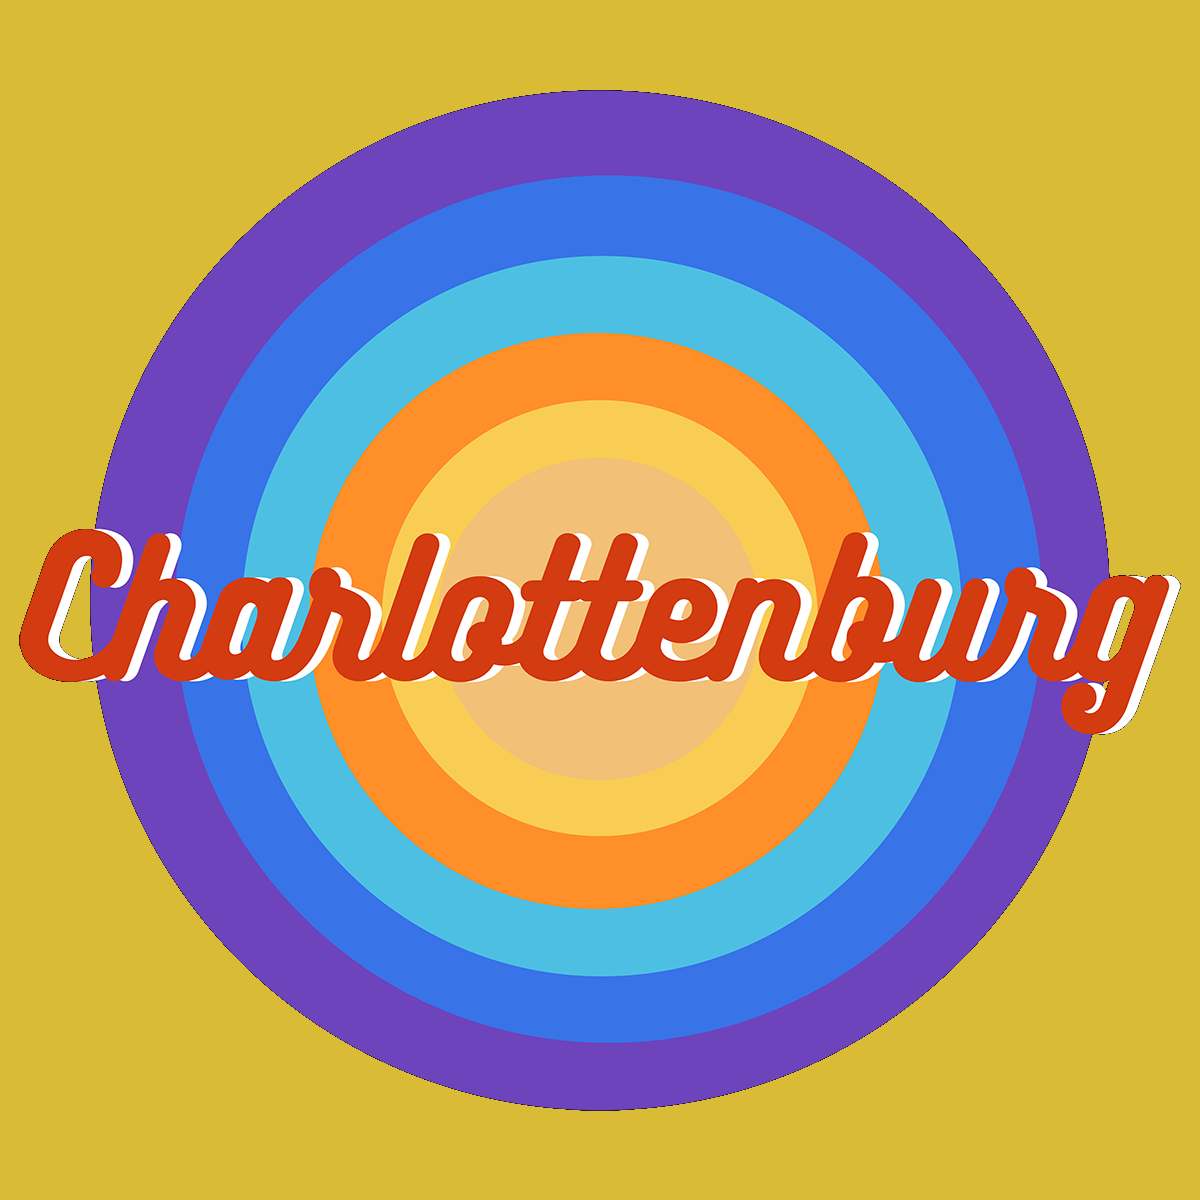 Charlottenburg Retro